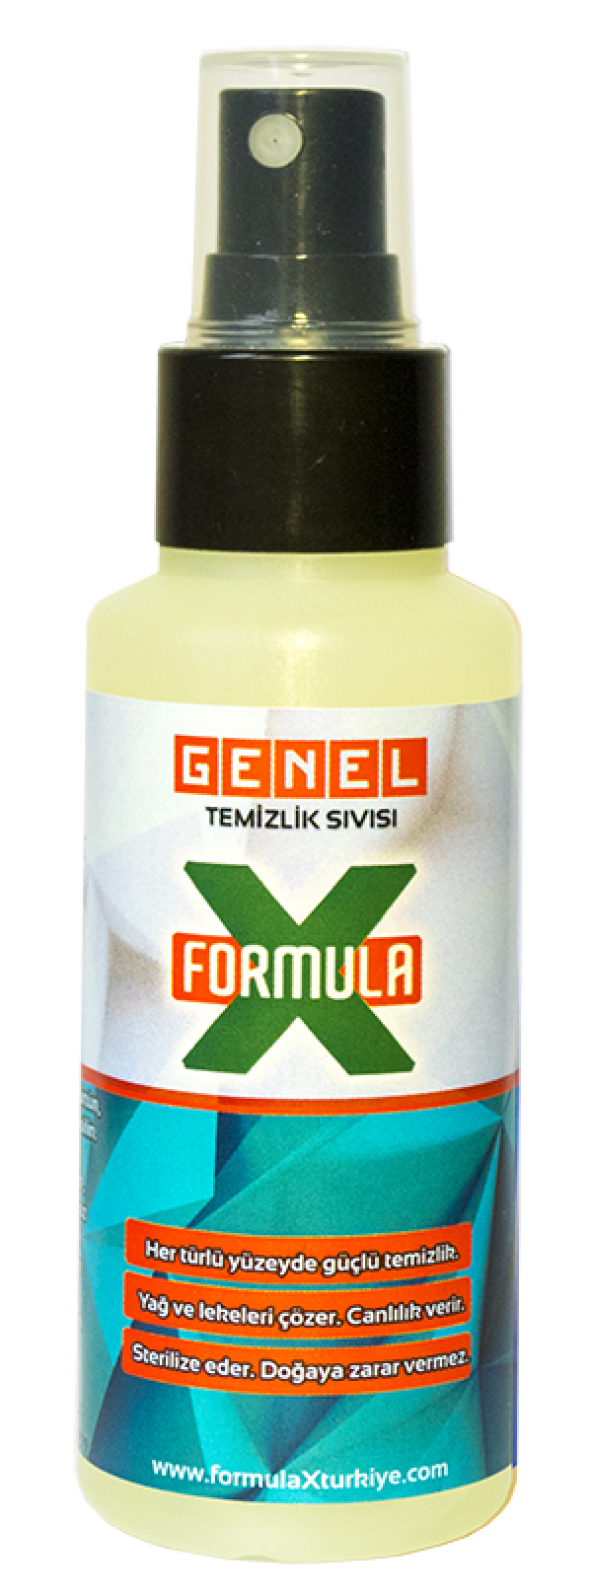 FormulaX GENEL Temizlik Sıvısı